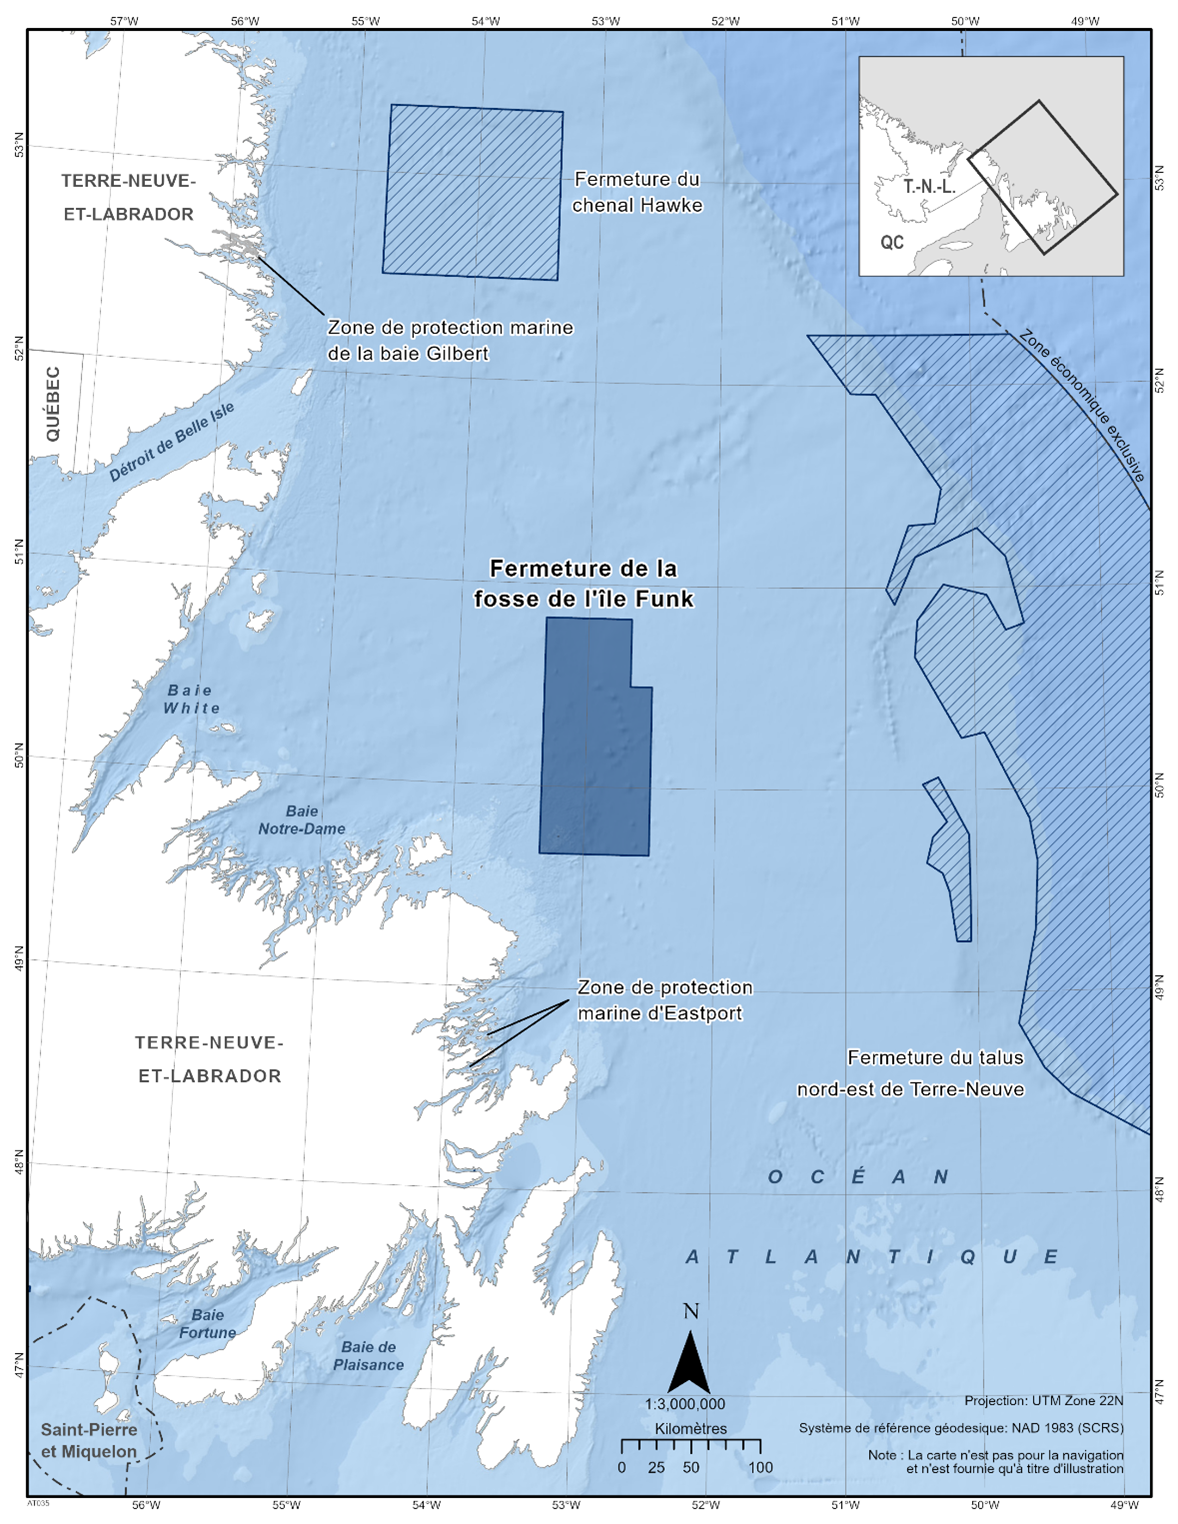 Carte de la fermeture de la fosse de l'île Funk en bleu foncé. La carte montre également d'autres refuges marins à proximité avec des lignes diagonales bleu foncé (fermeture du chenal Hawke & fermeture de la pente nord-est de Terre-Neuve).